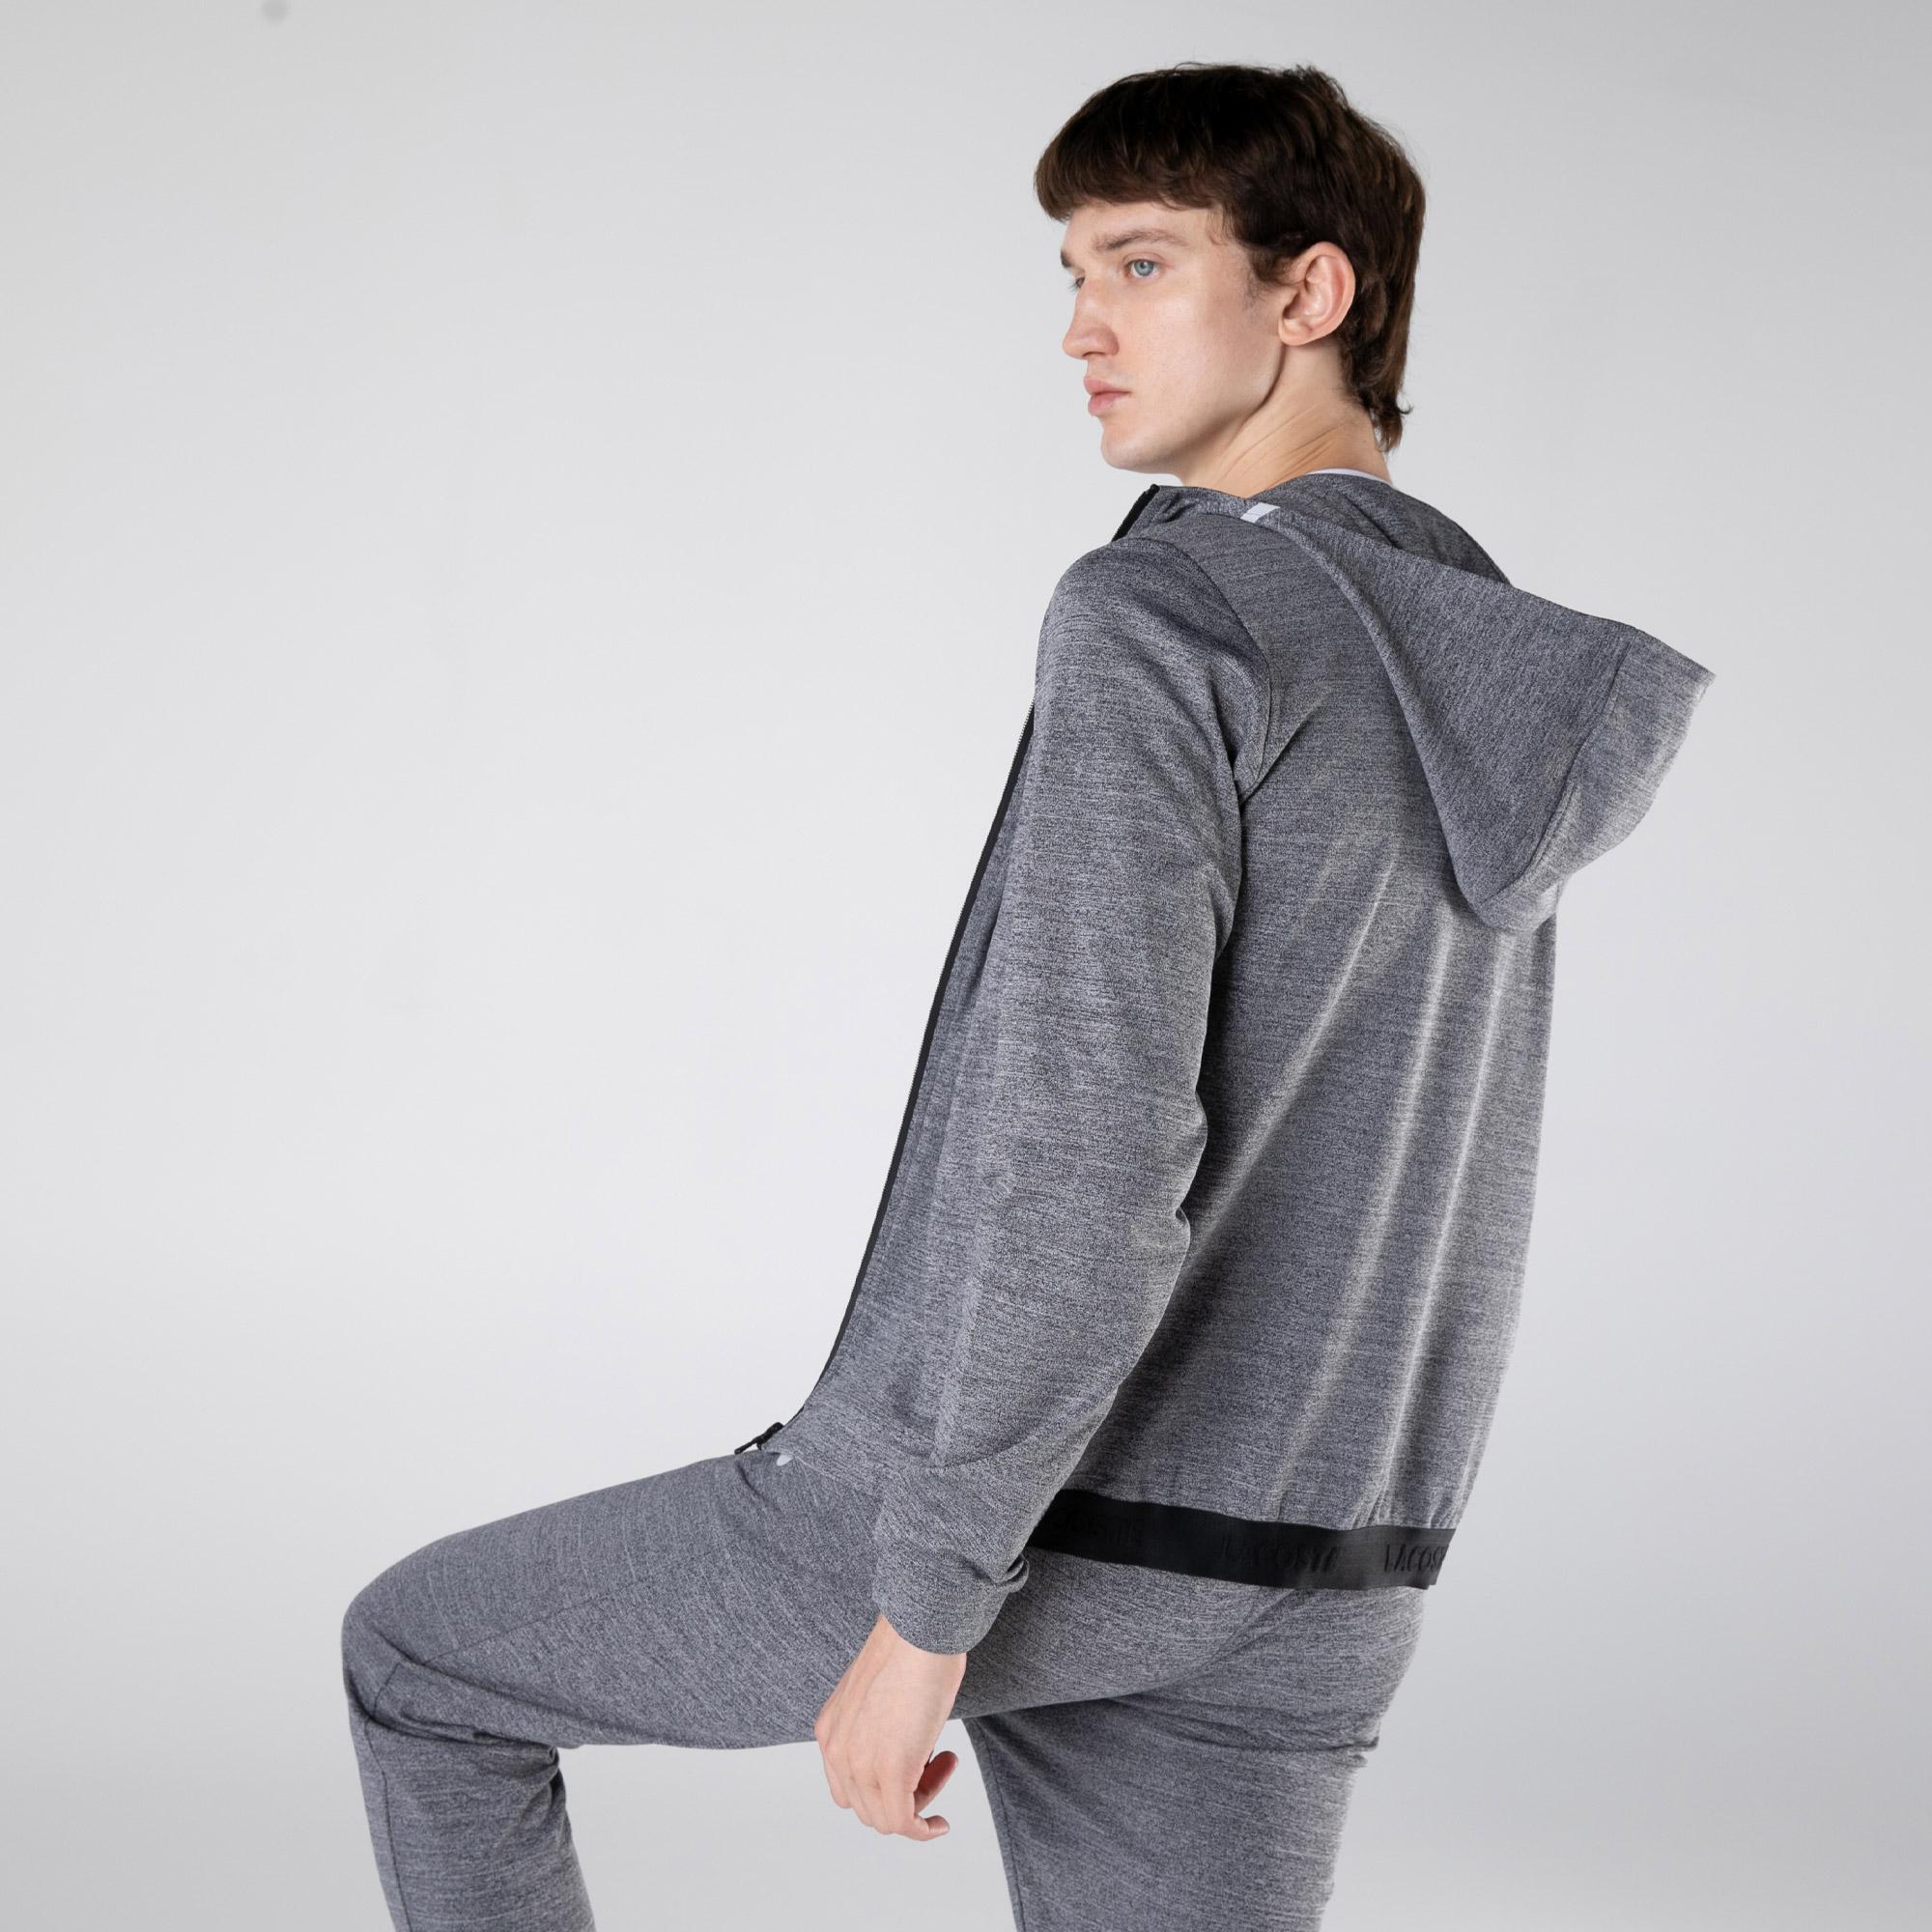 Lacoste SPORT Men's slim fit sweatshirt with a zipper